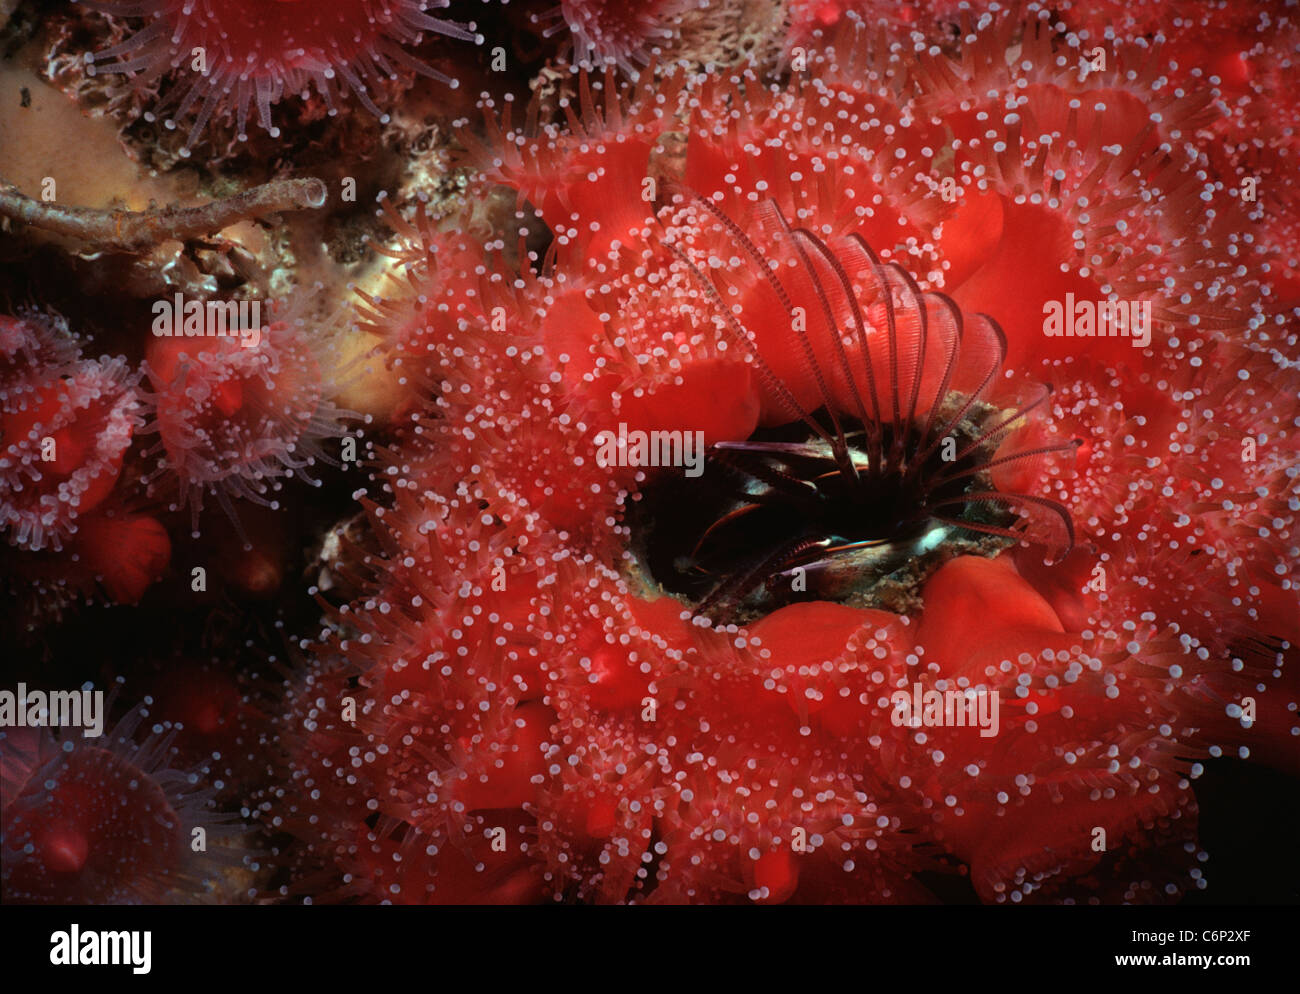 Riesige Eichel Barnacle (Balanus Nubilis) und Club-bestückte Anemone Filter Fütterung. Kalifornien, USA, Pazifik Stockfoto